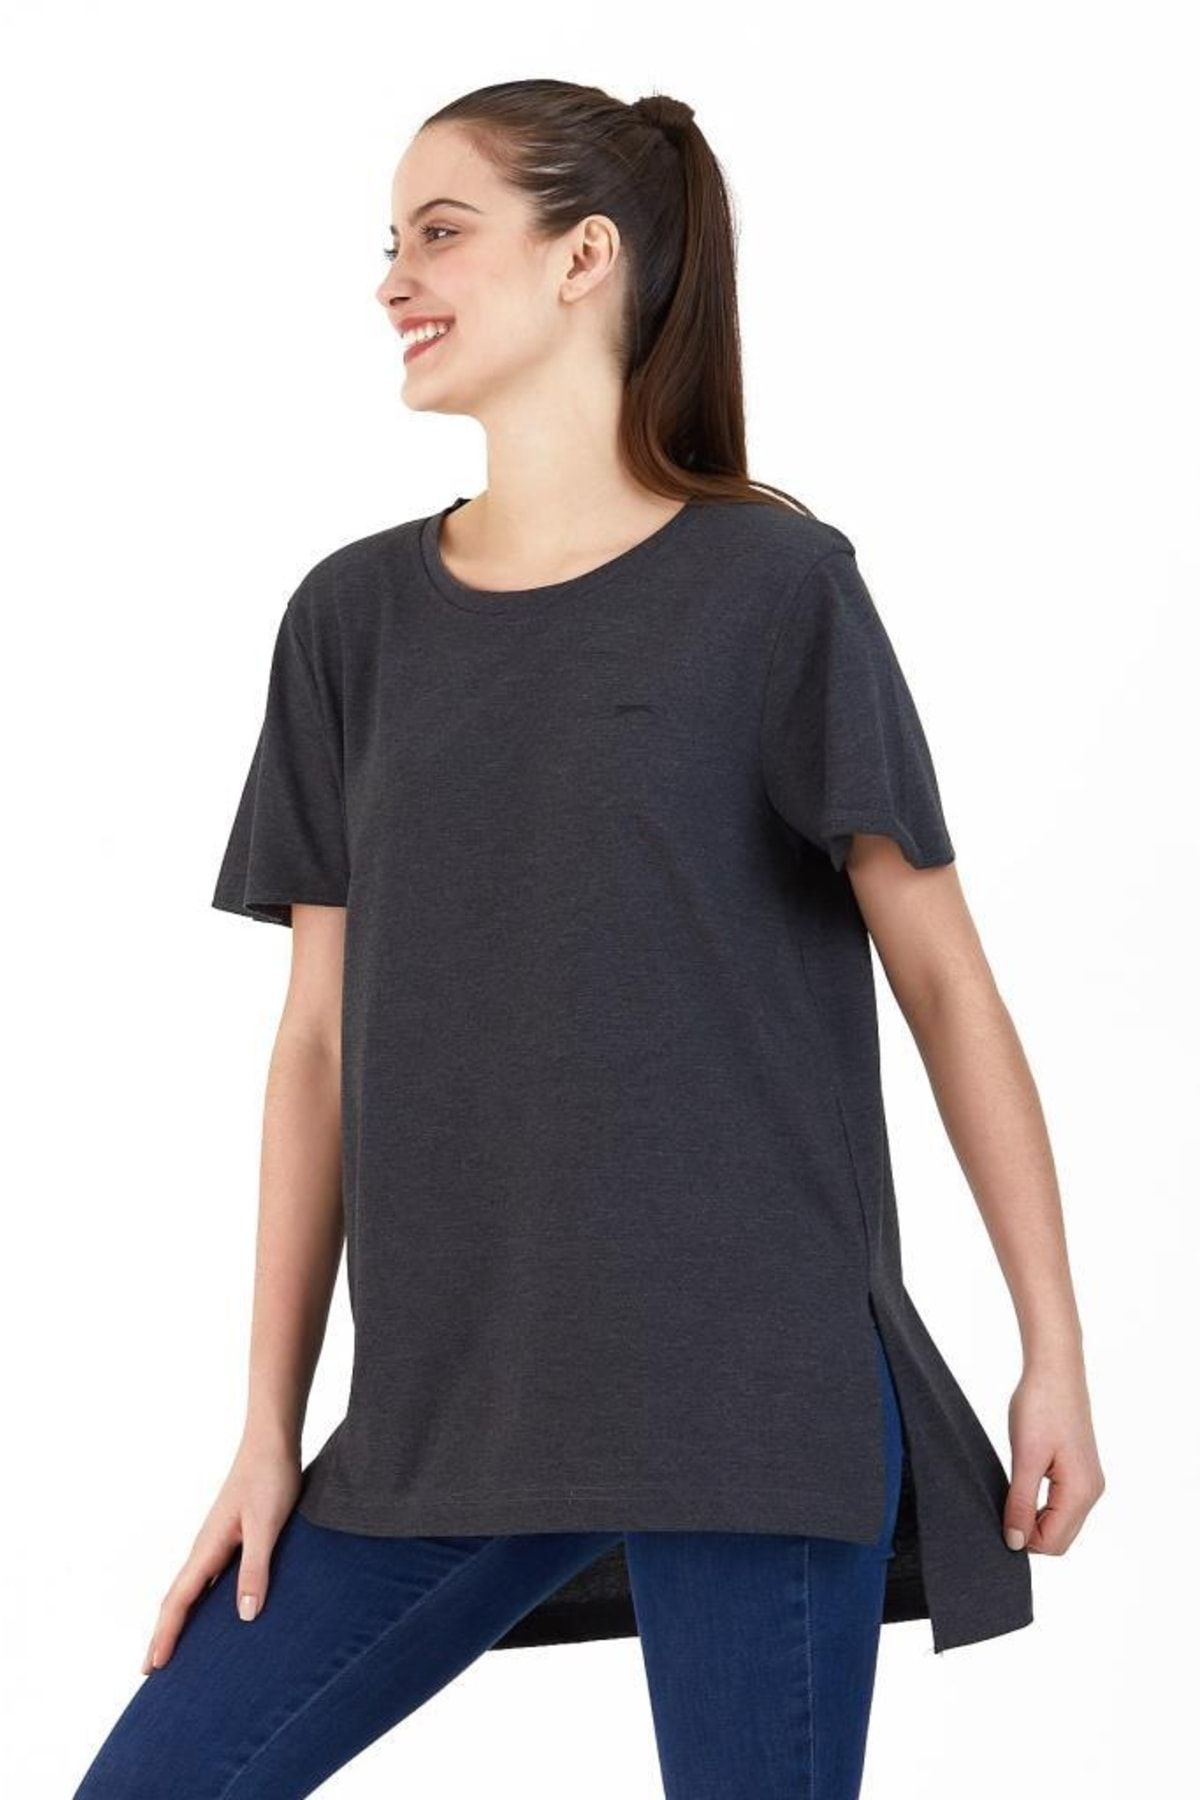 Slazenger Merılyn Kadın T-shirt Koyu Gri Kadın Tişört Gri Koyu Gri Uzun Tişört